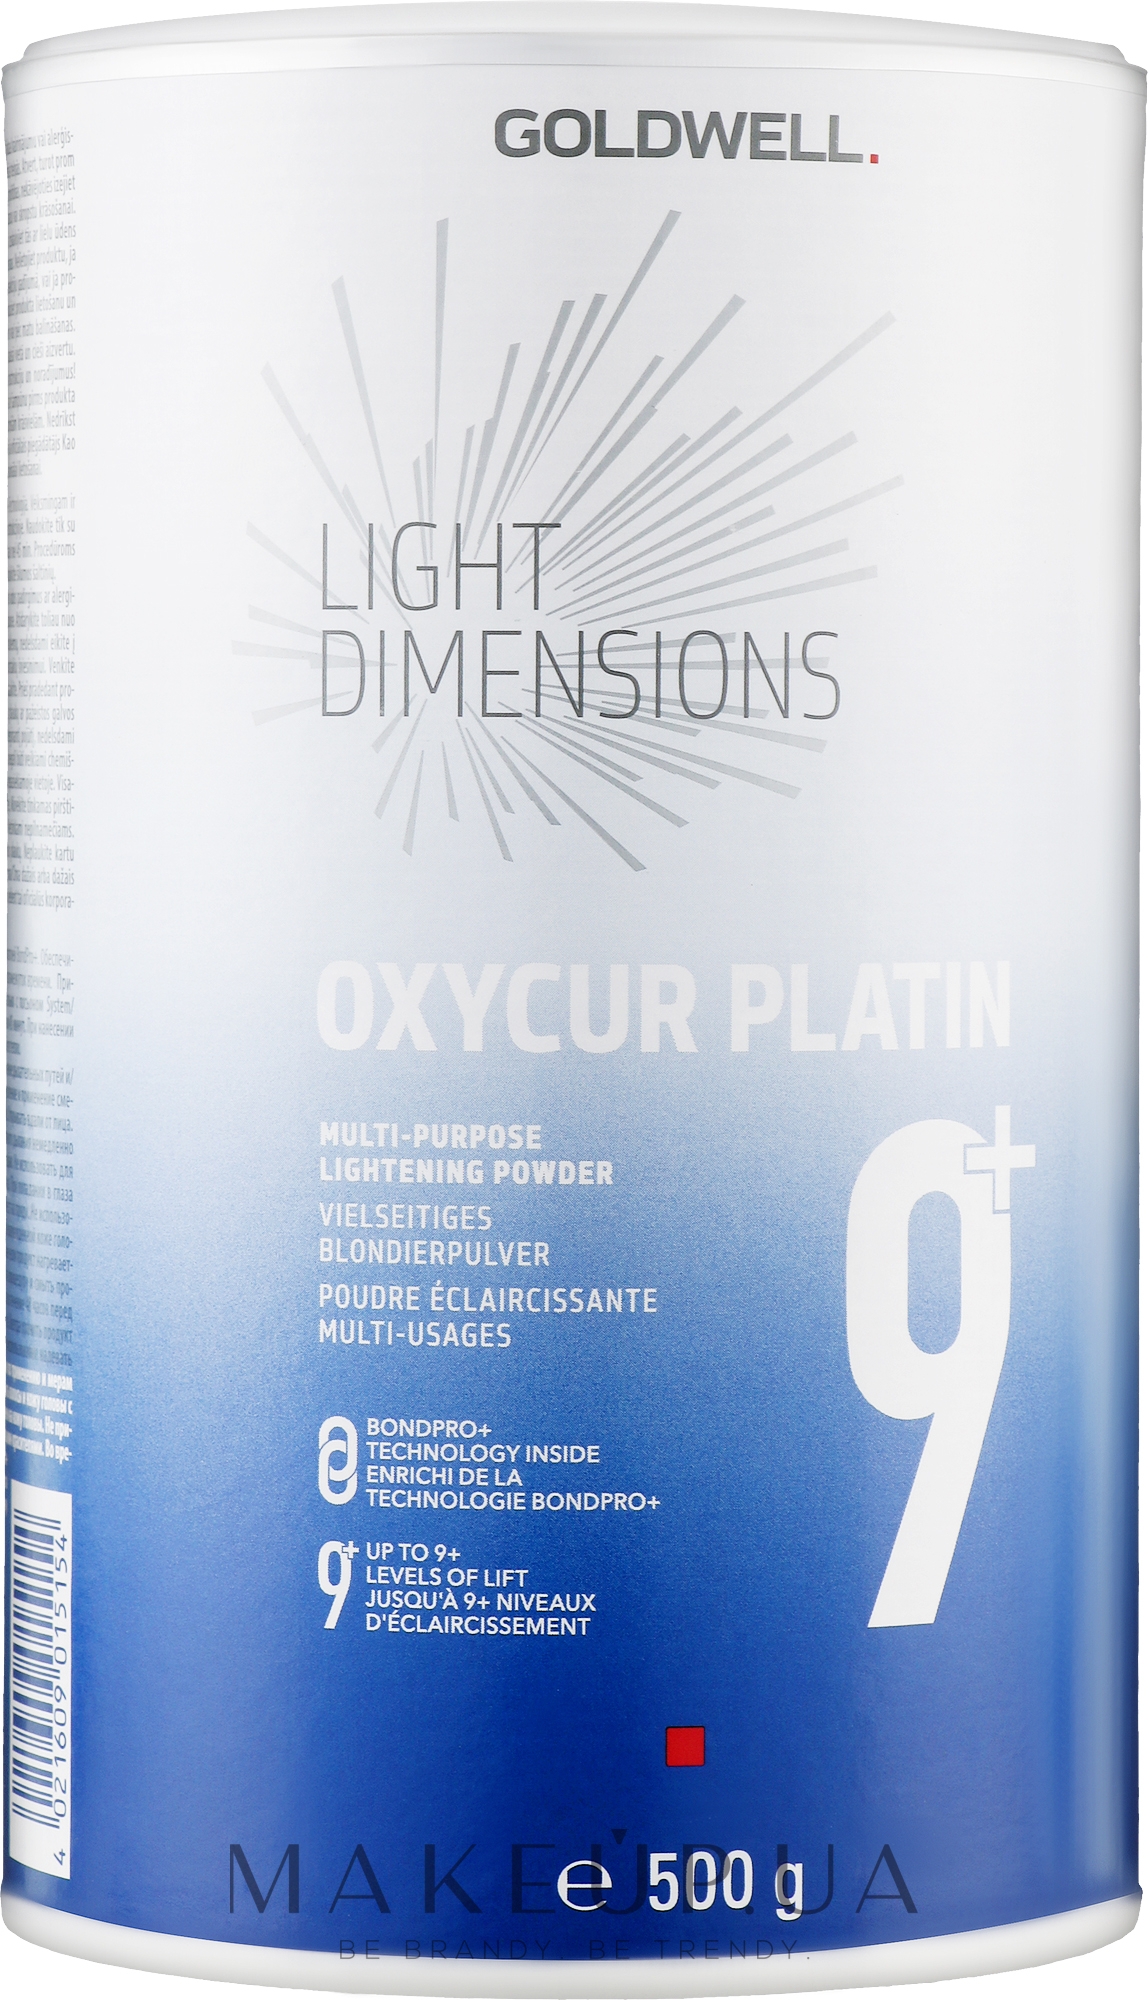 Освітлювальний порошок для волосся - Goldwell Light Dimension Oxycur Platin 9+ — фото 500g